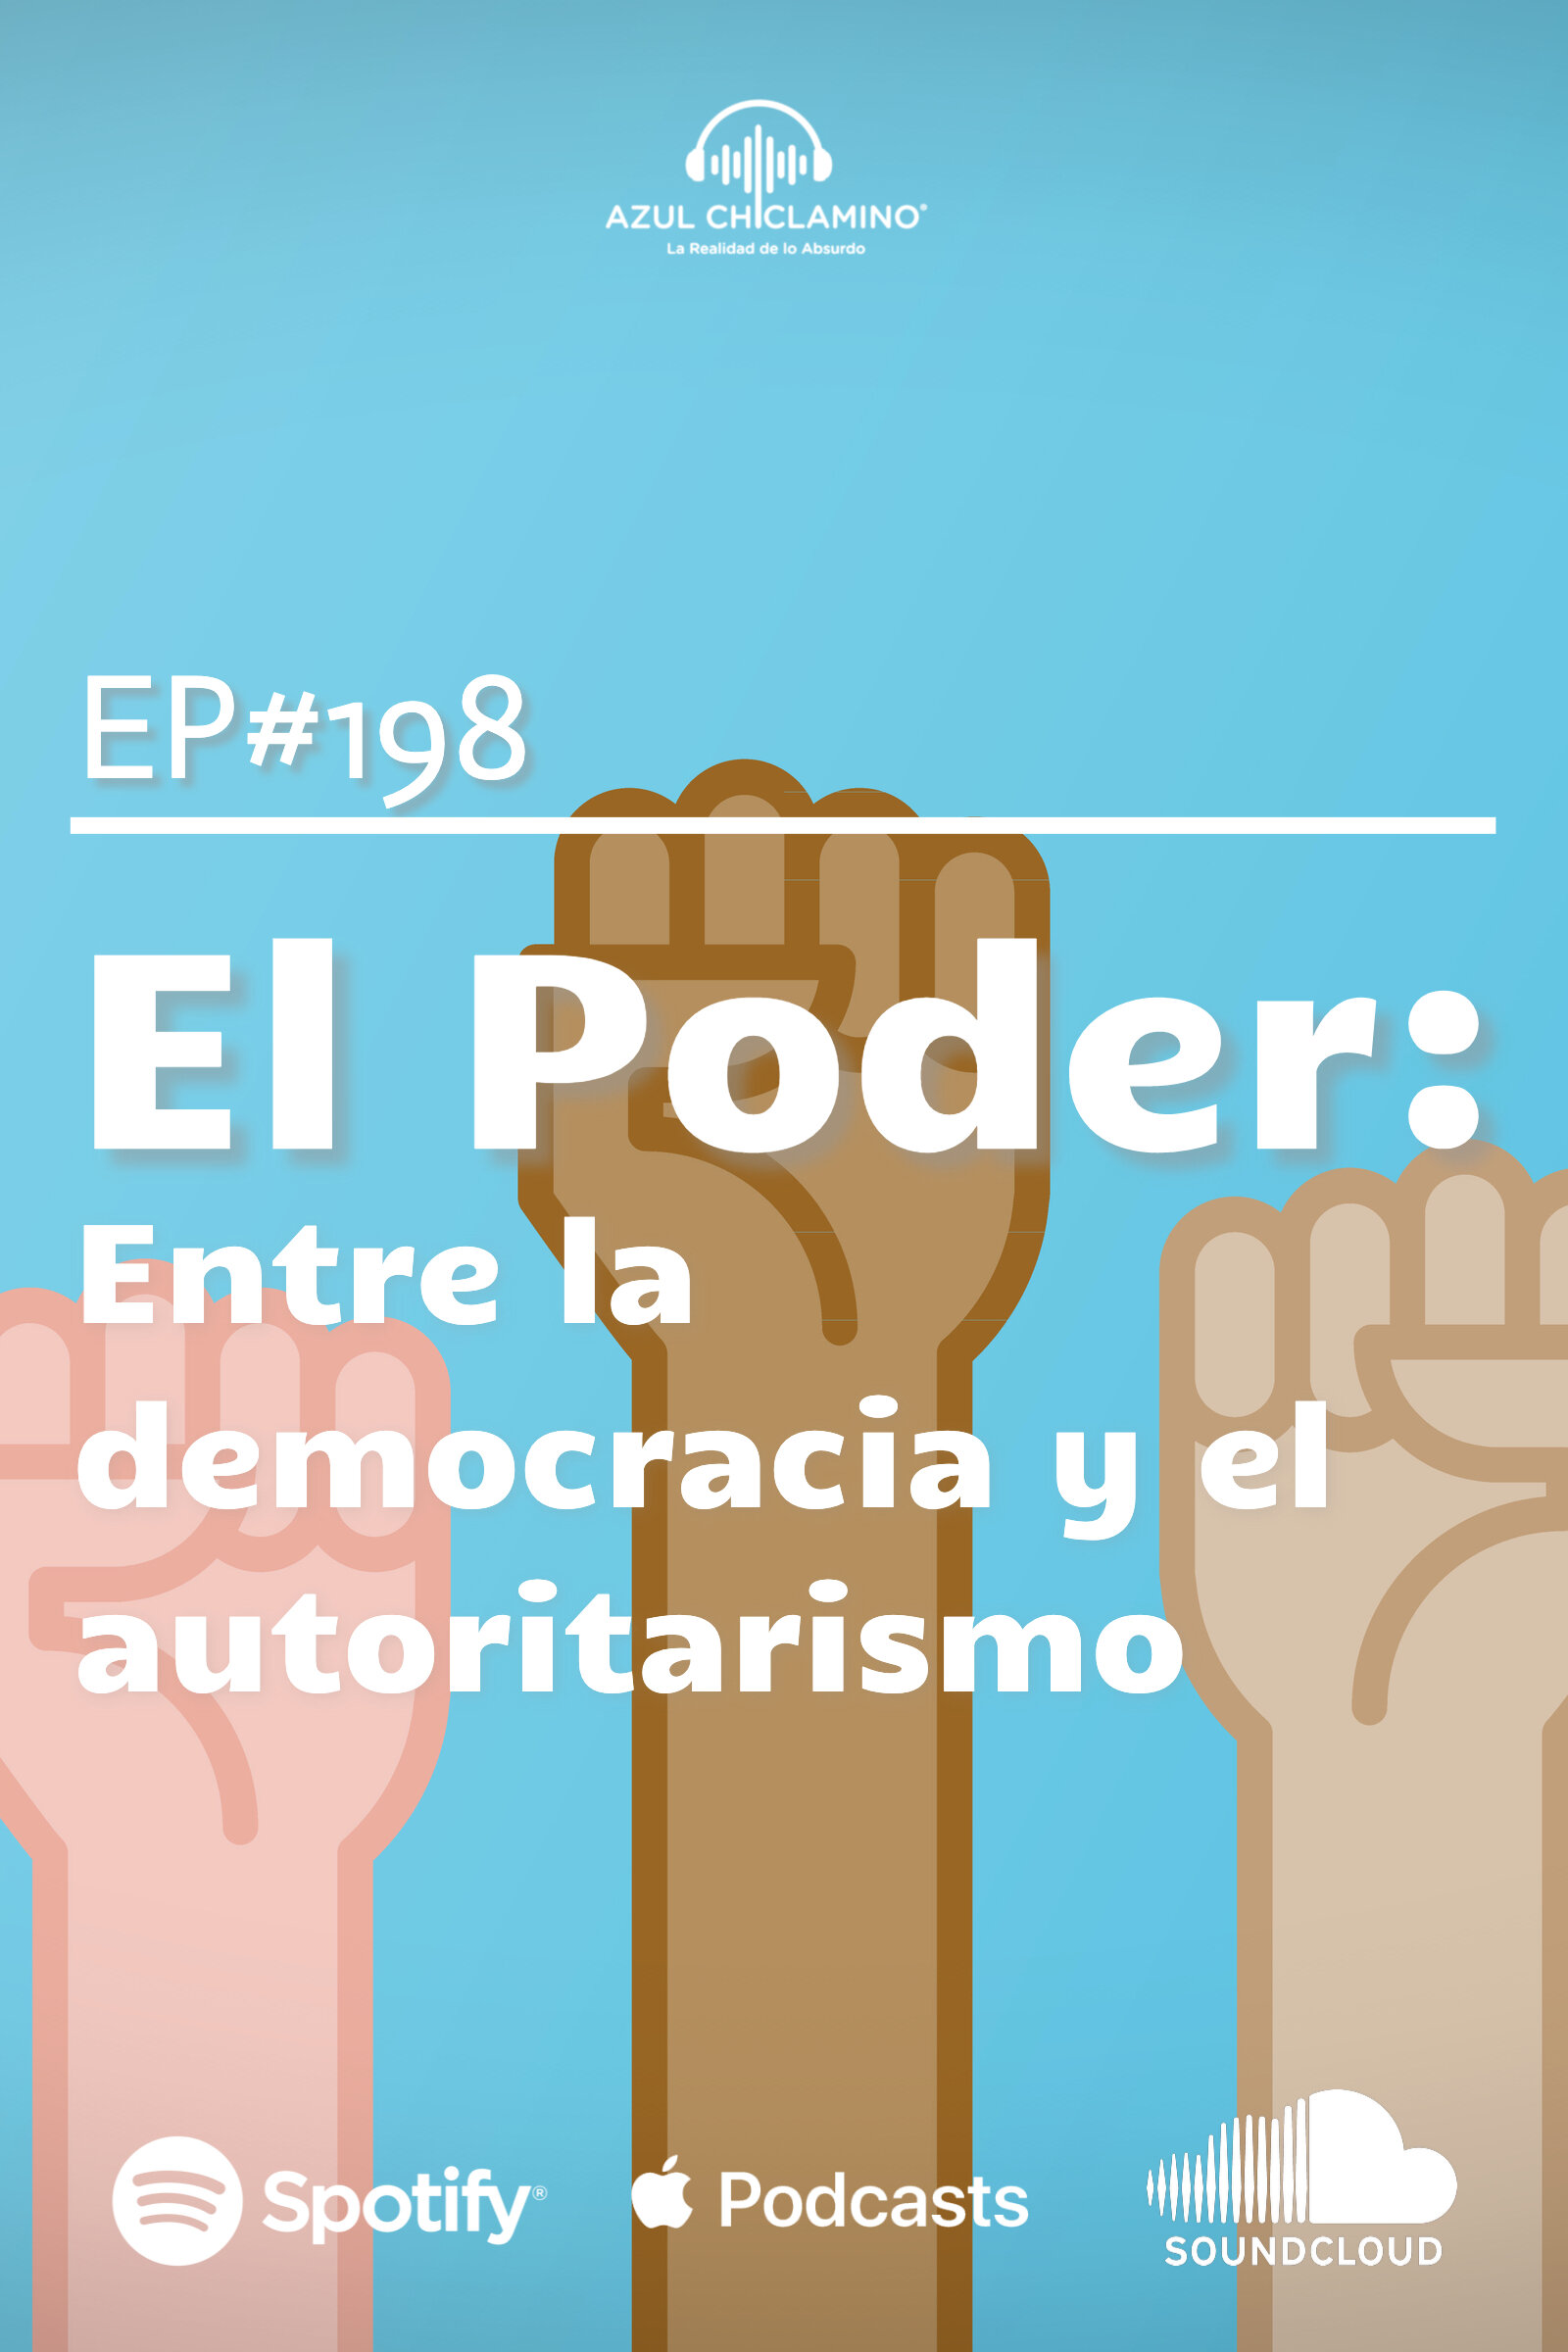 ep-198-el-poder-entre-la-democracia-y-el-autoritarismo-azch